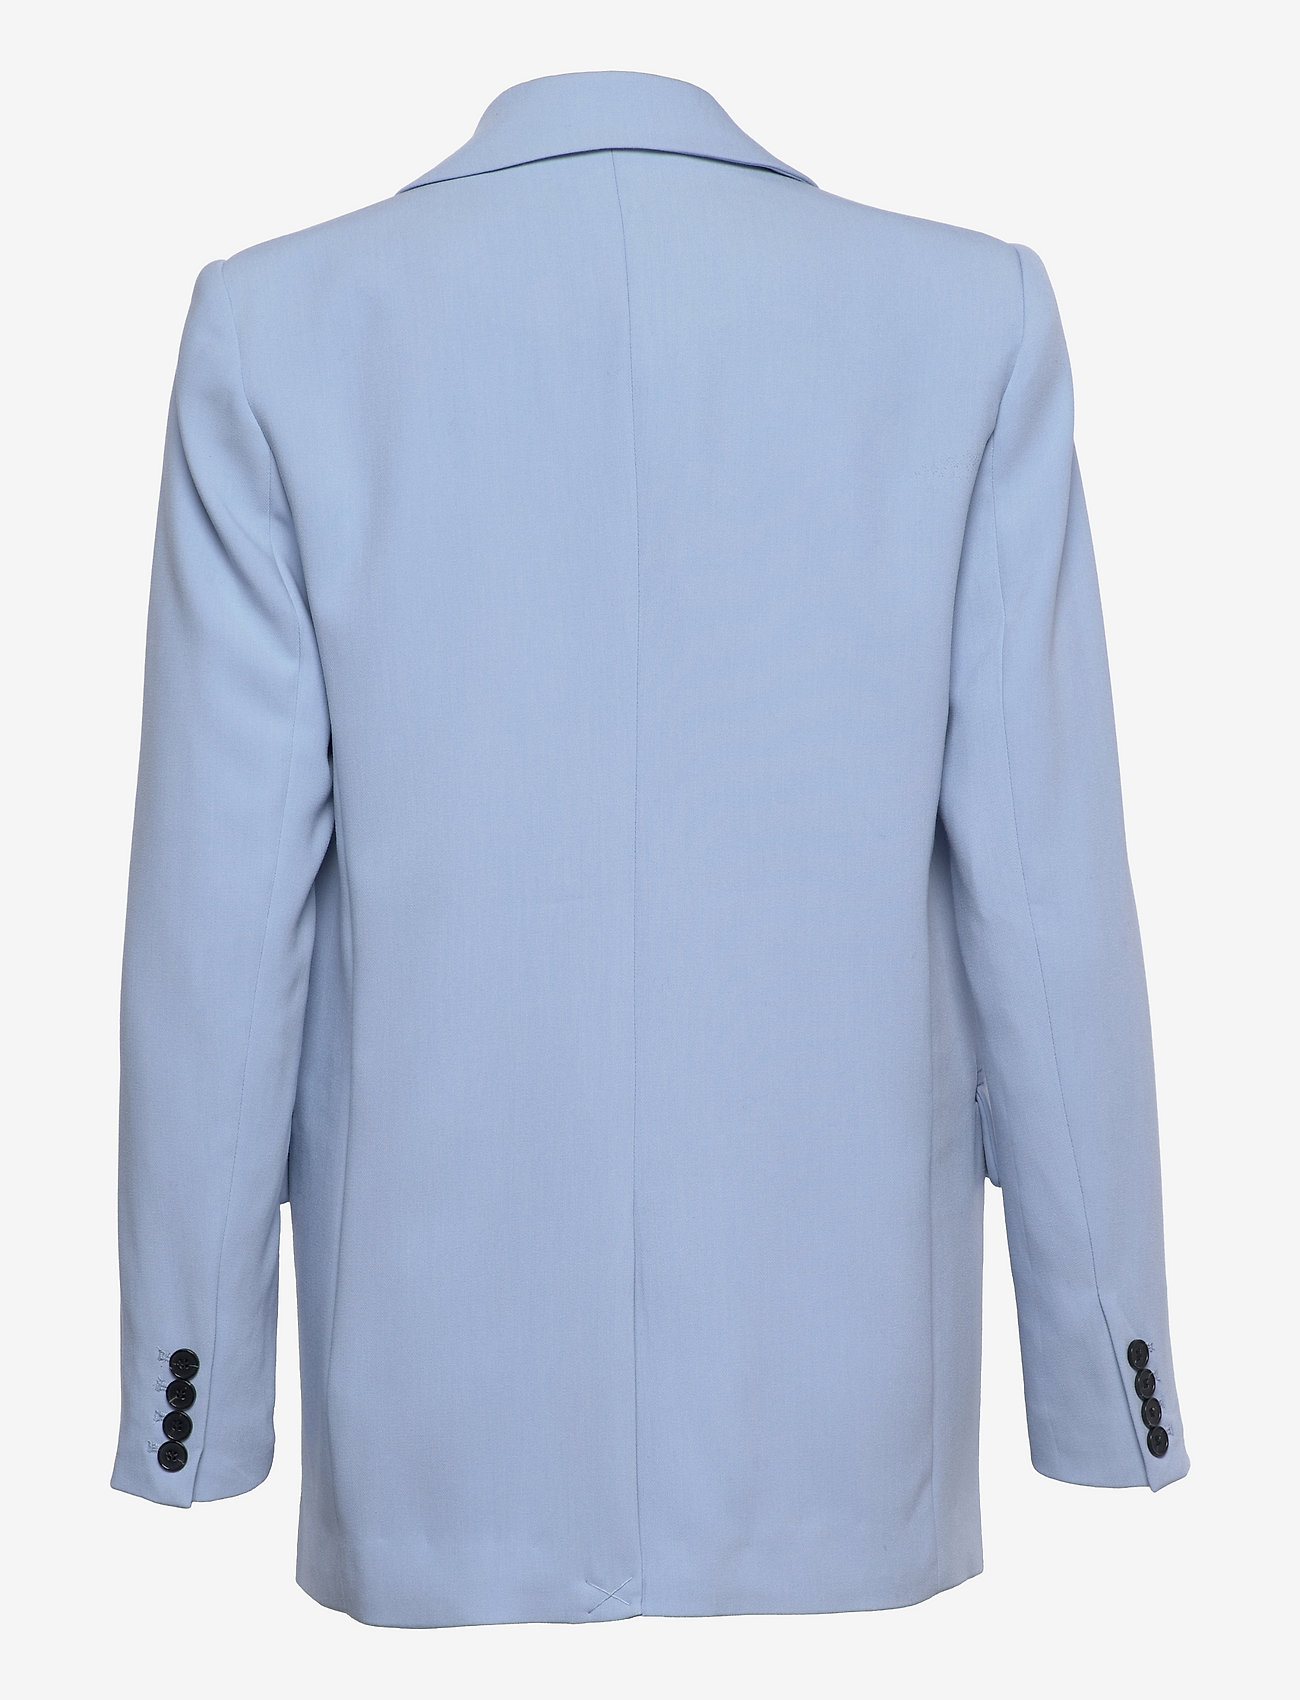 Bruuns Bazaar - CindySusBBFrida blazer - feestelijke kleding voor outlet-prijzen - brunnera blue - 1